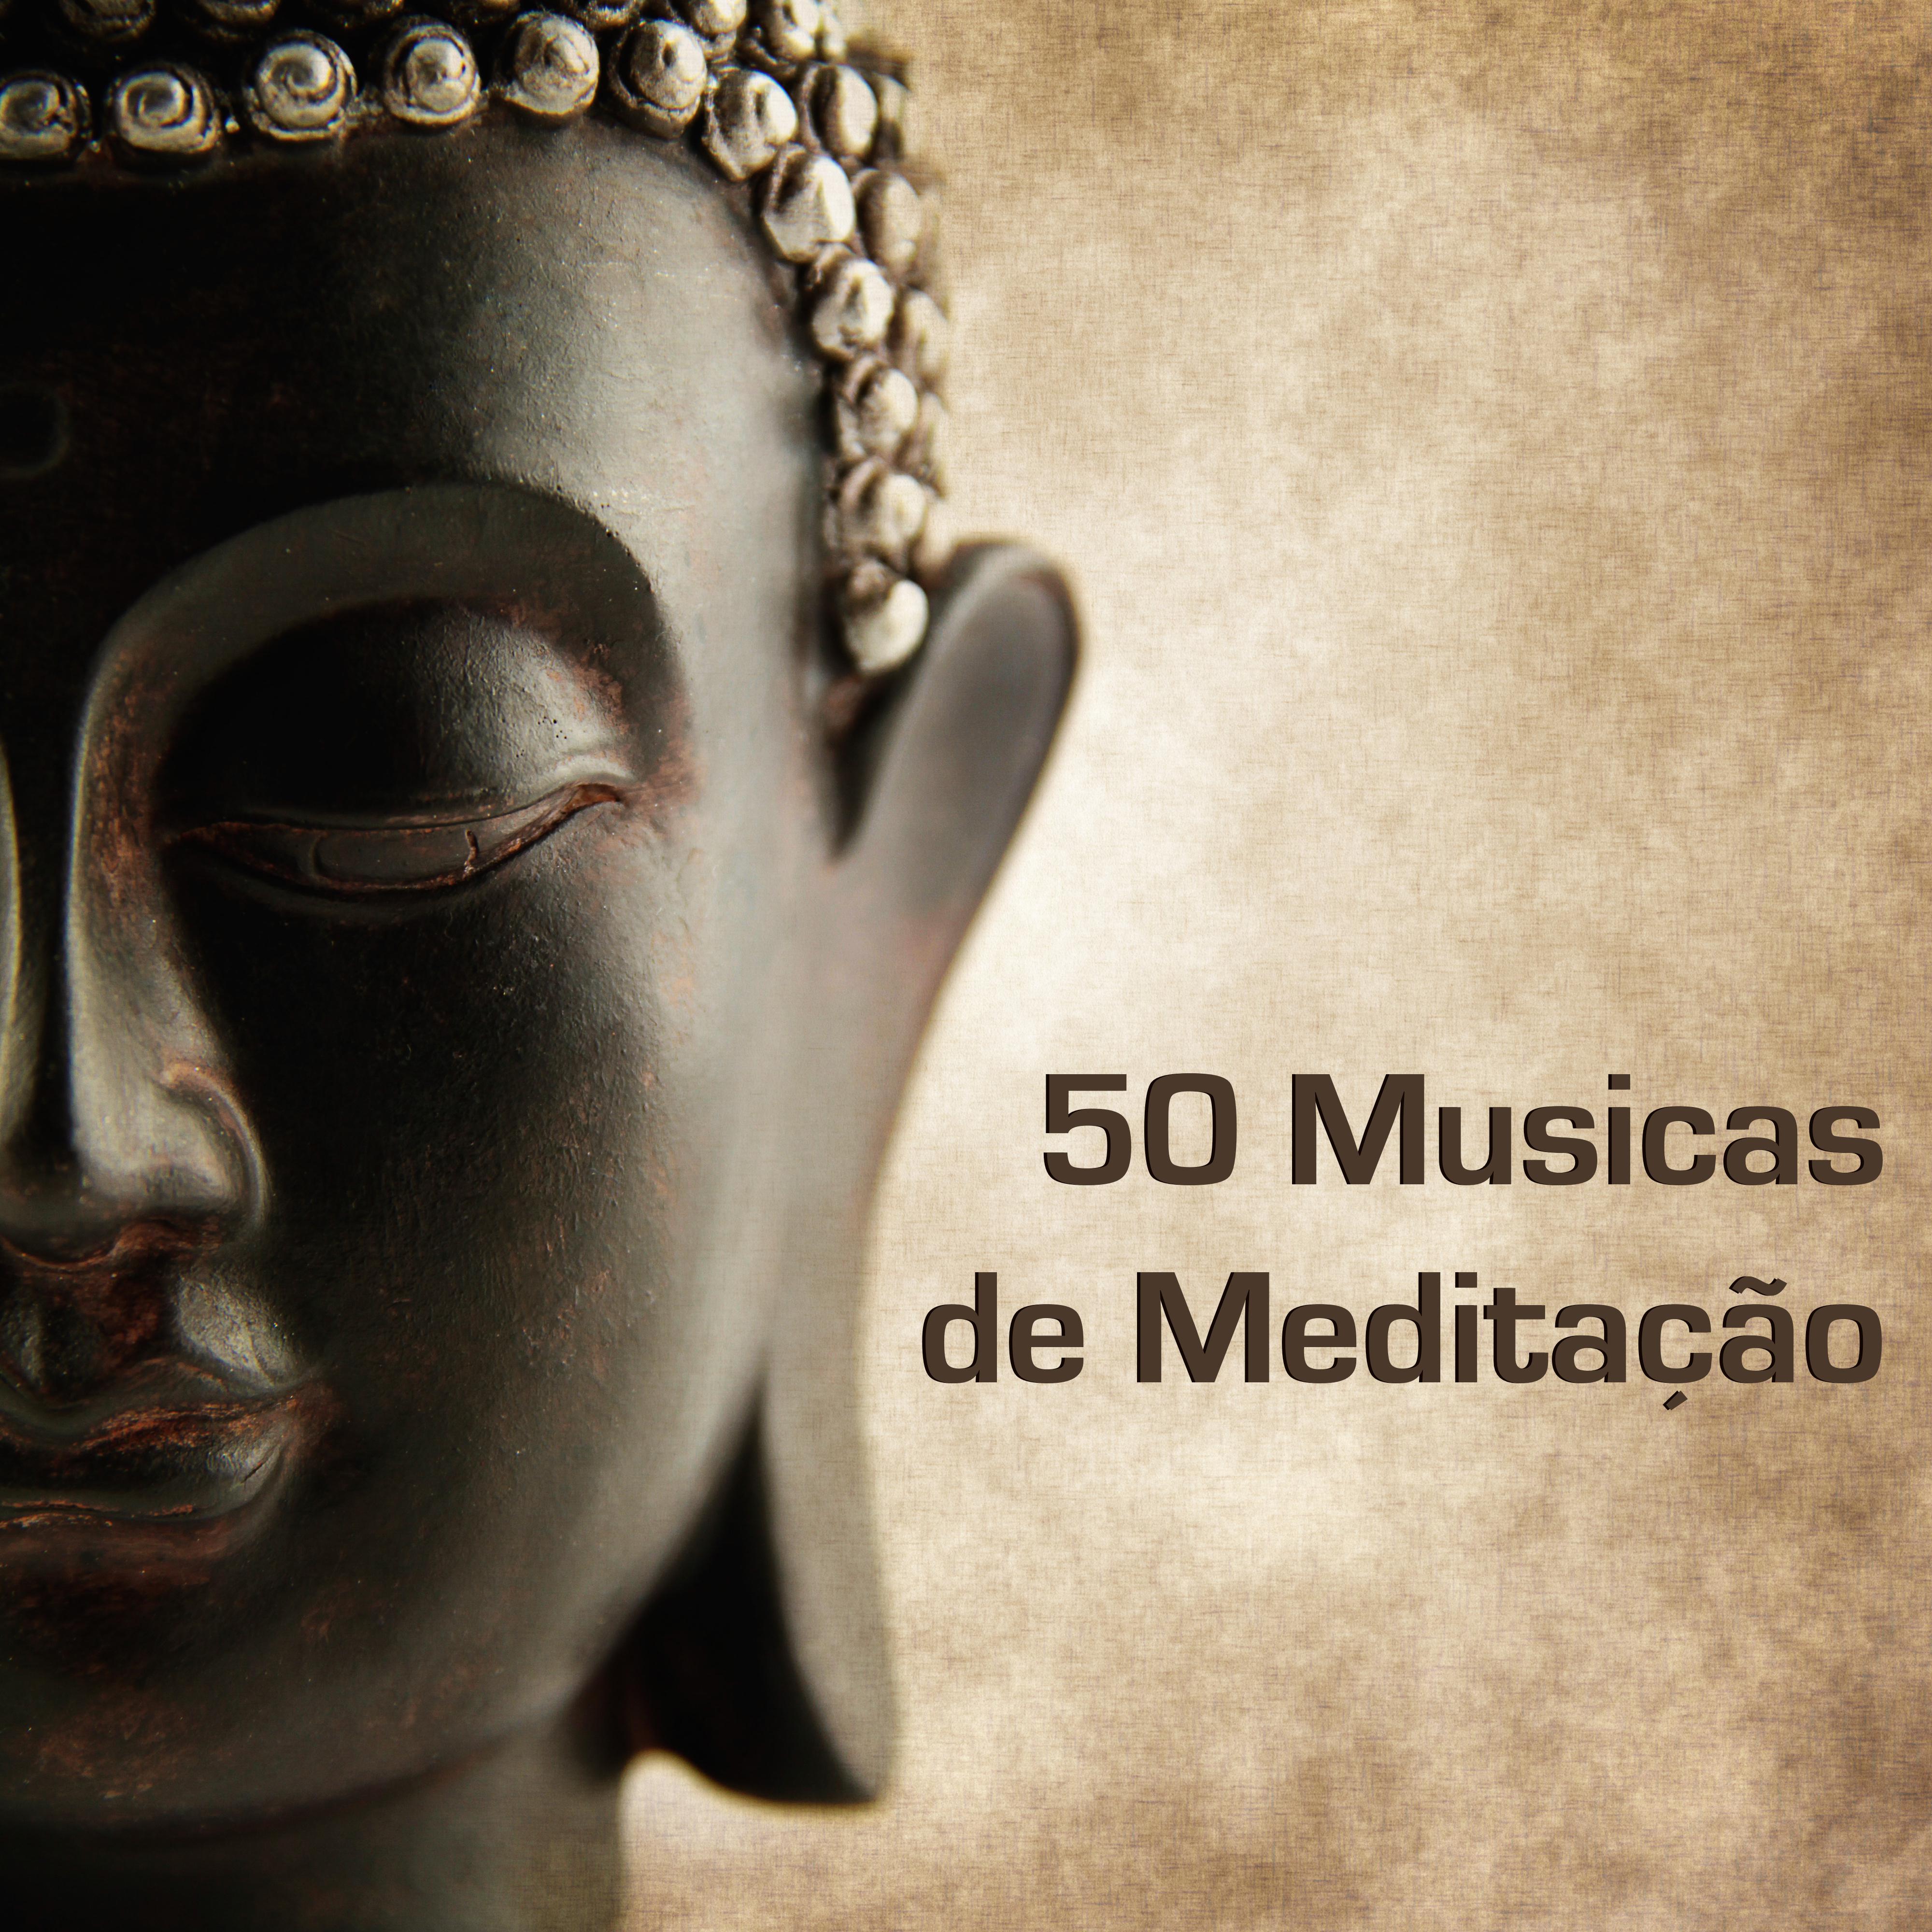 50 Musicas para Medita o  Musicas Zen Super Relaxantes Instrumentais para Meditar, Musicas Ambiente para Dormir, Musicas de Fundo para Yoga